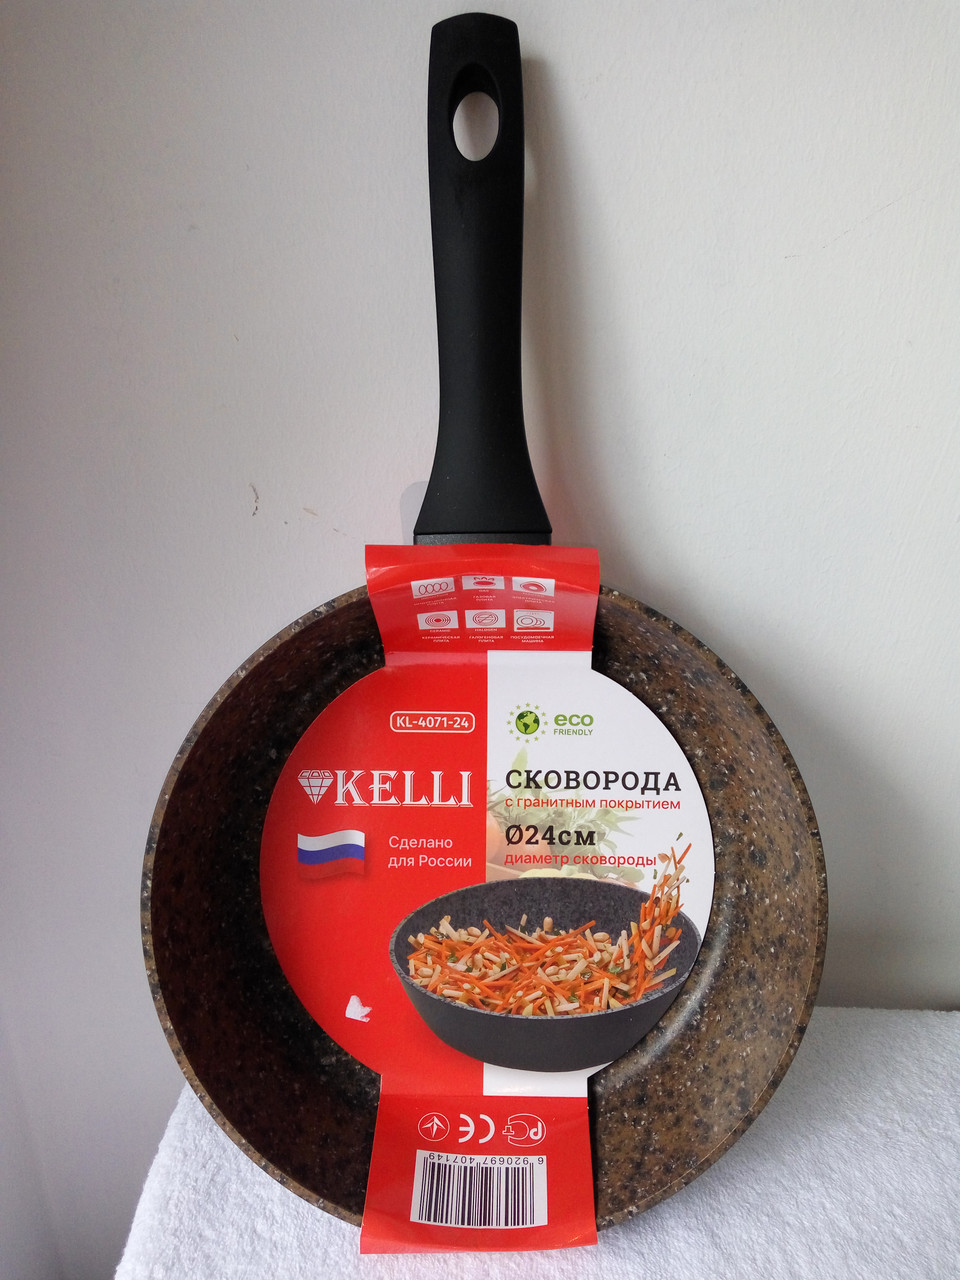 Сковорода с гранитным покрытием Kelli 26 см, KL 4071- 26